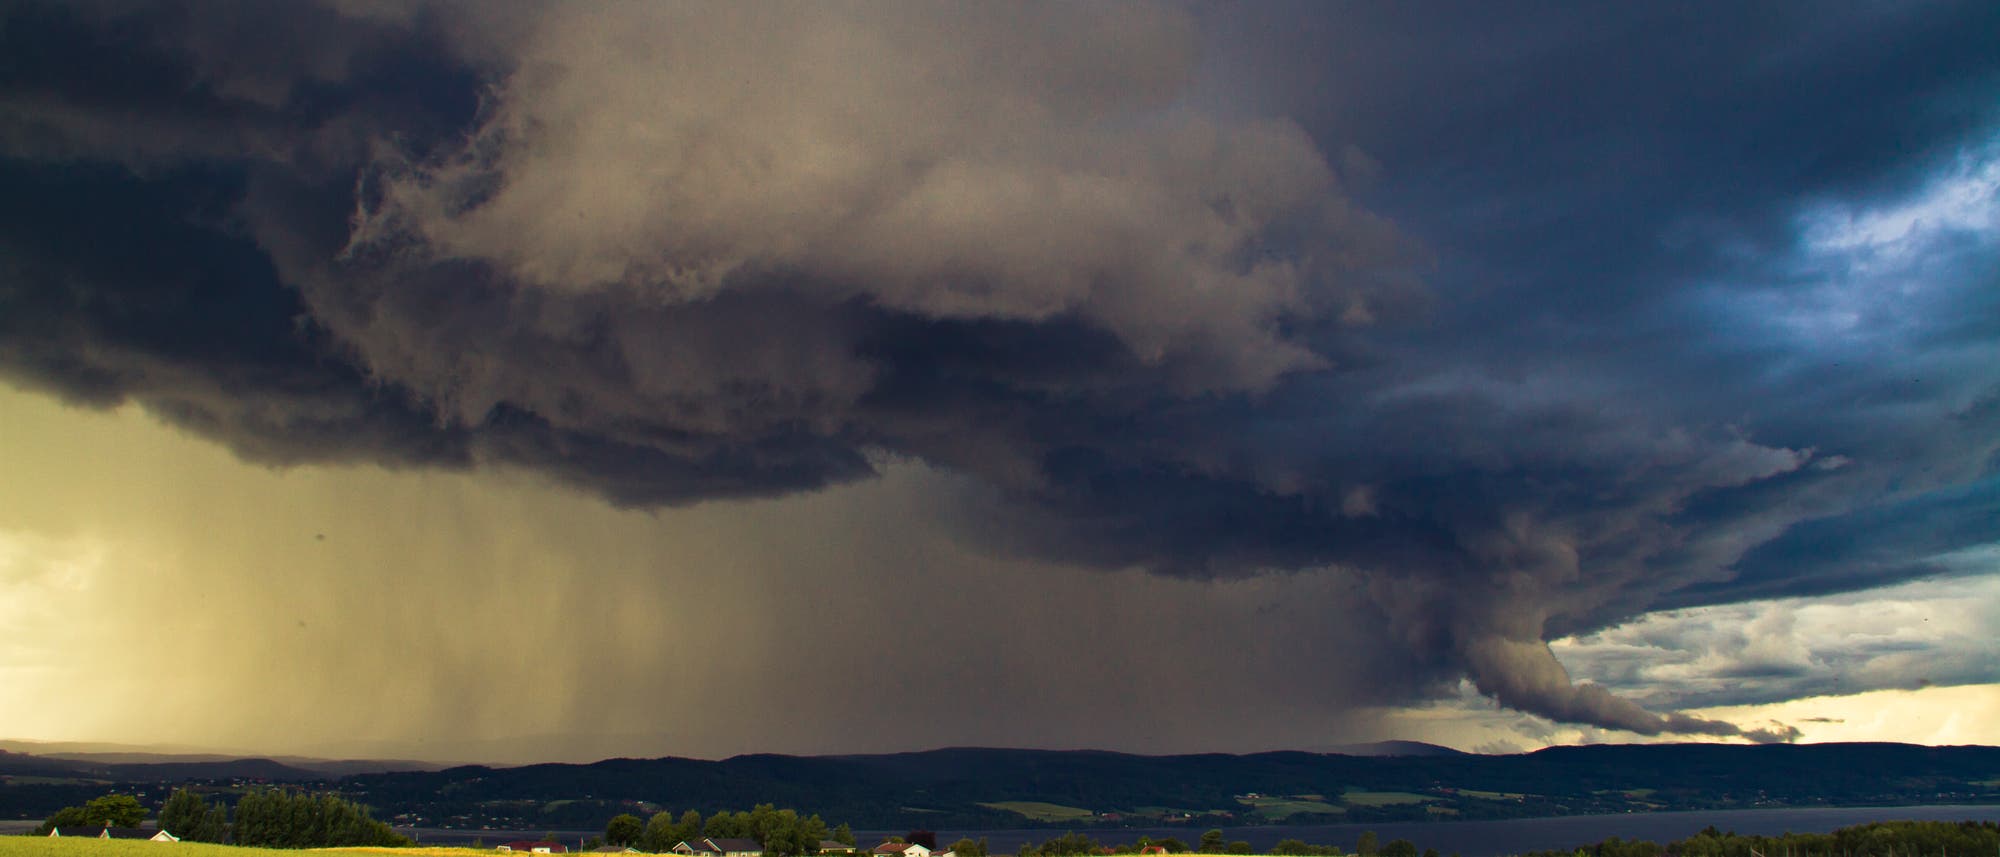 Sommerliches Gewitter mit Superzelle über Deutschland